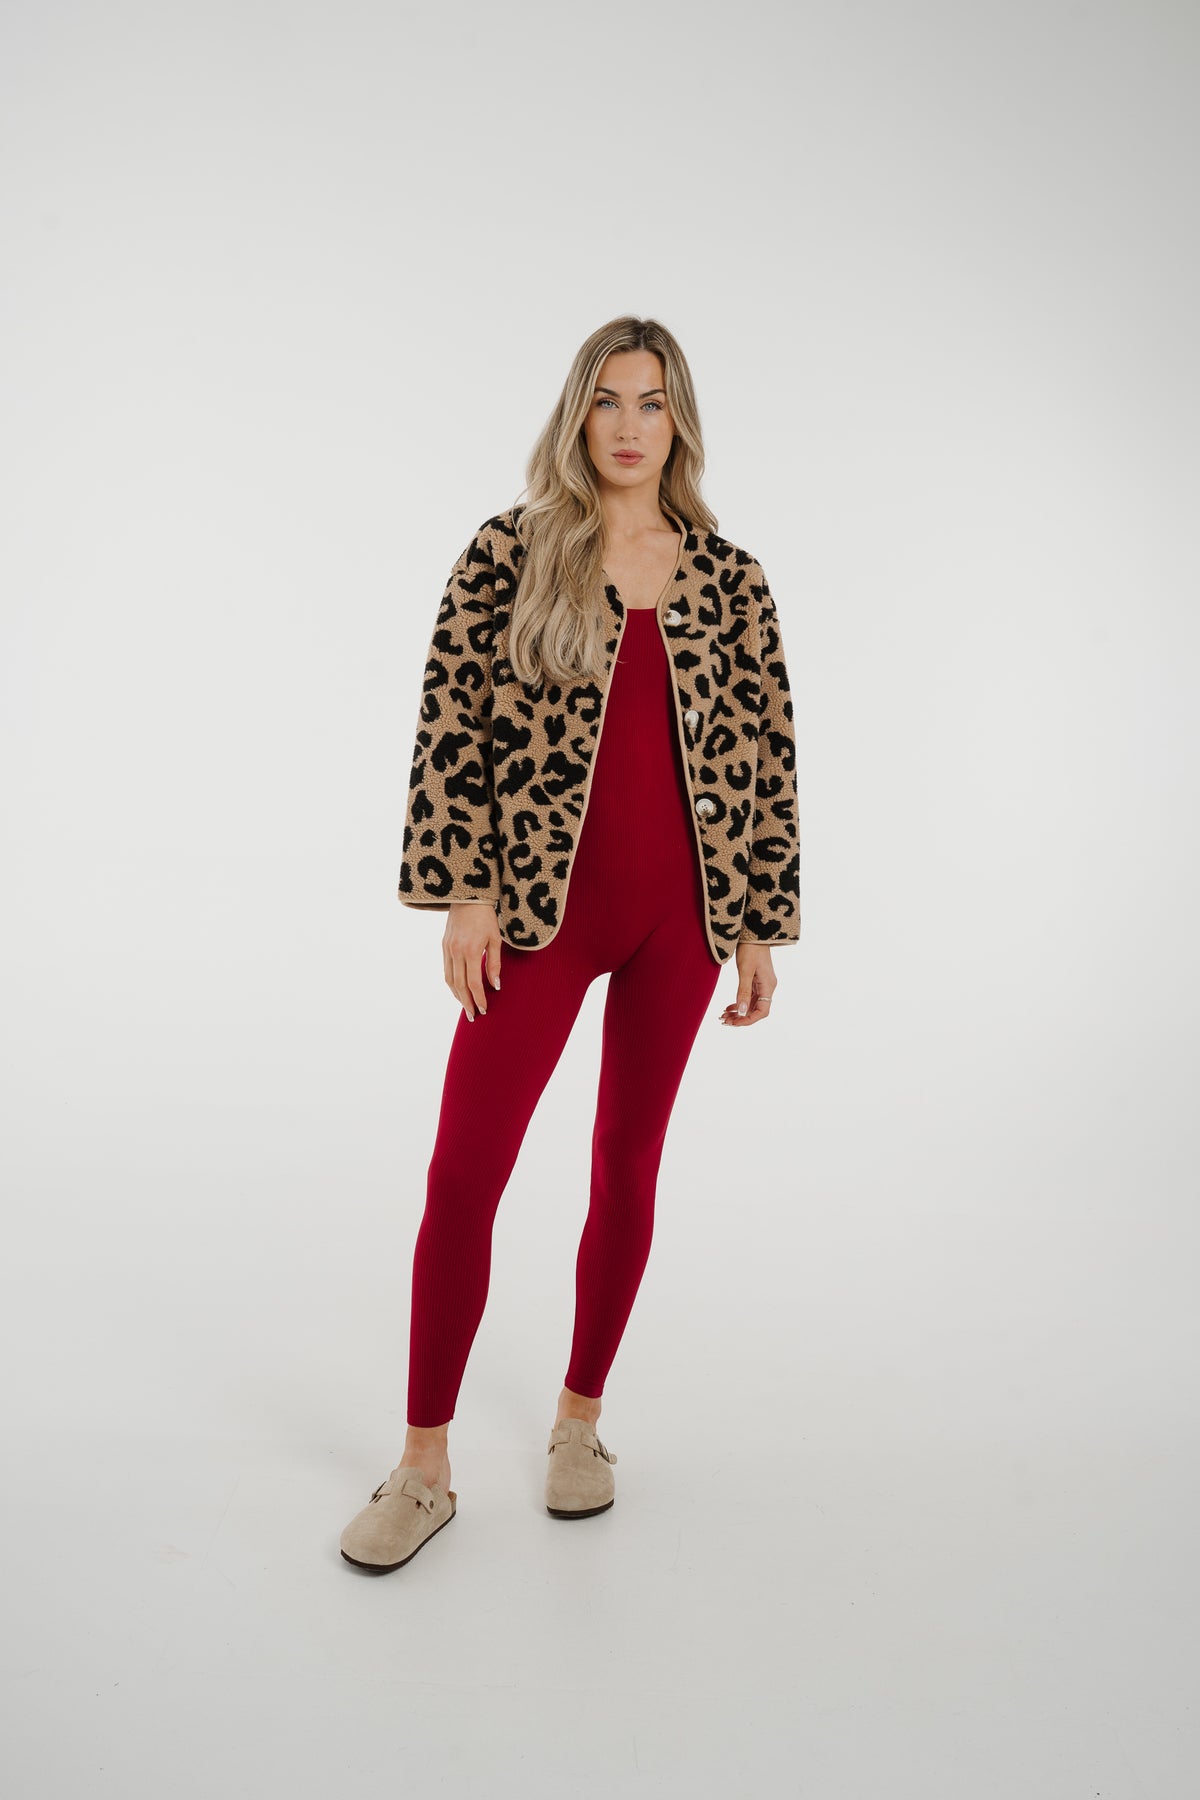 Maddie Textured Jacket In Leopard Print